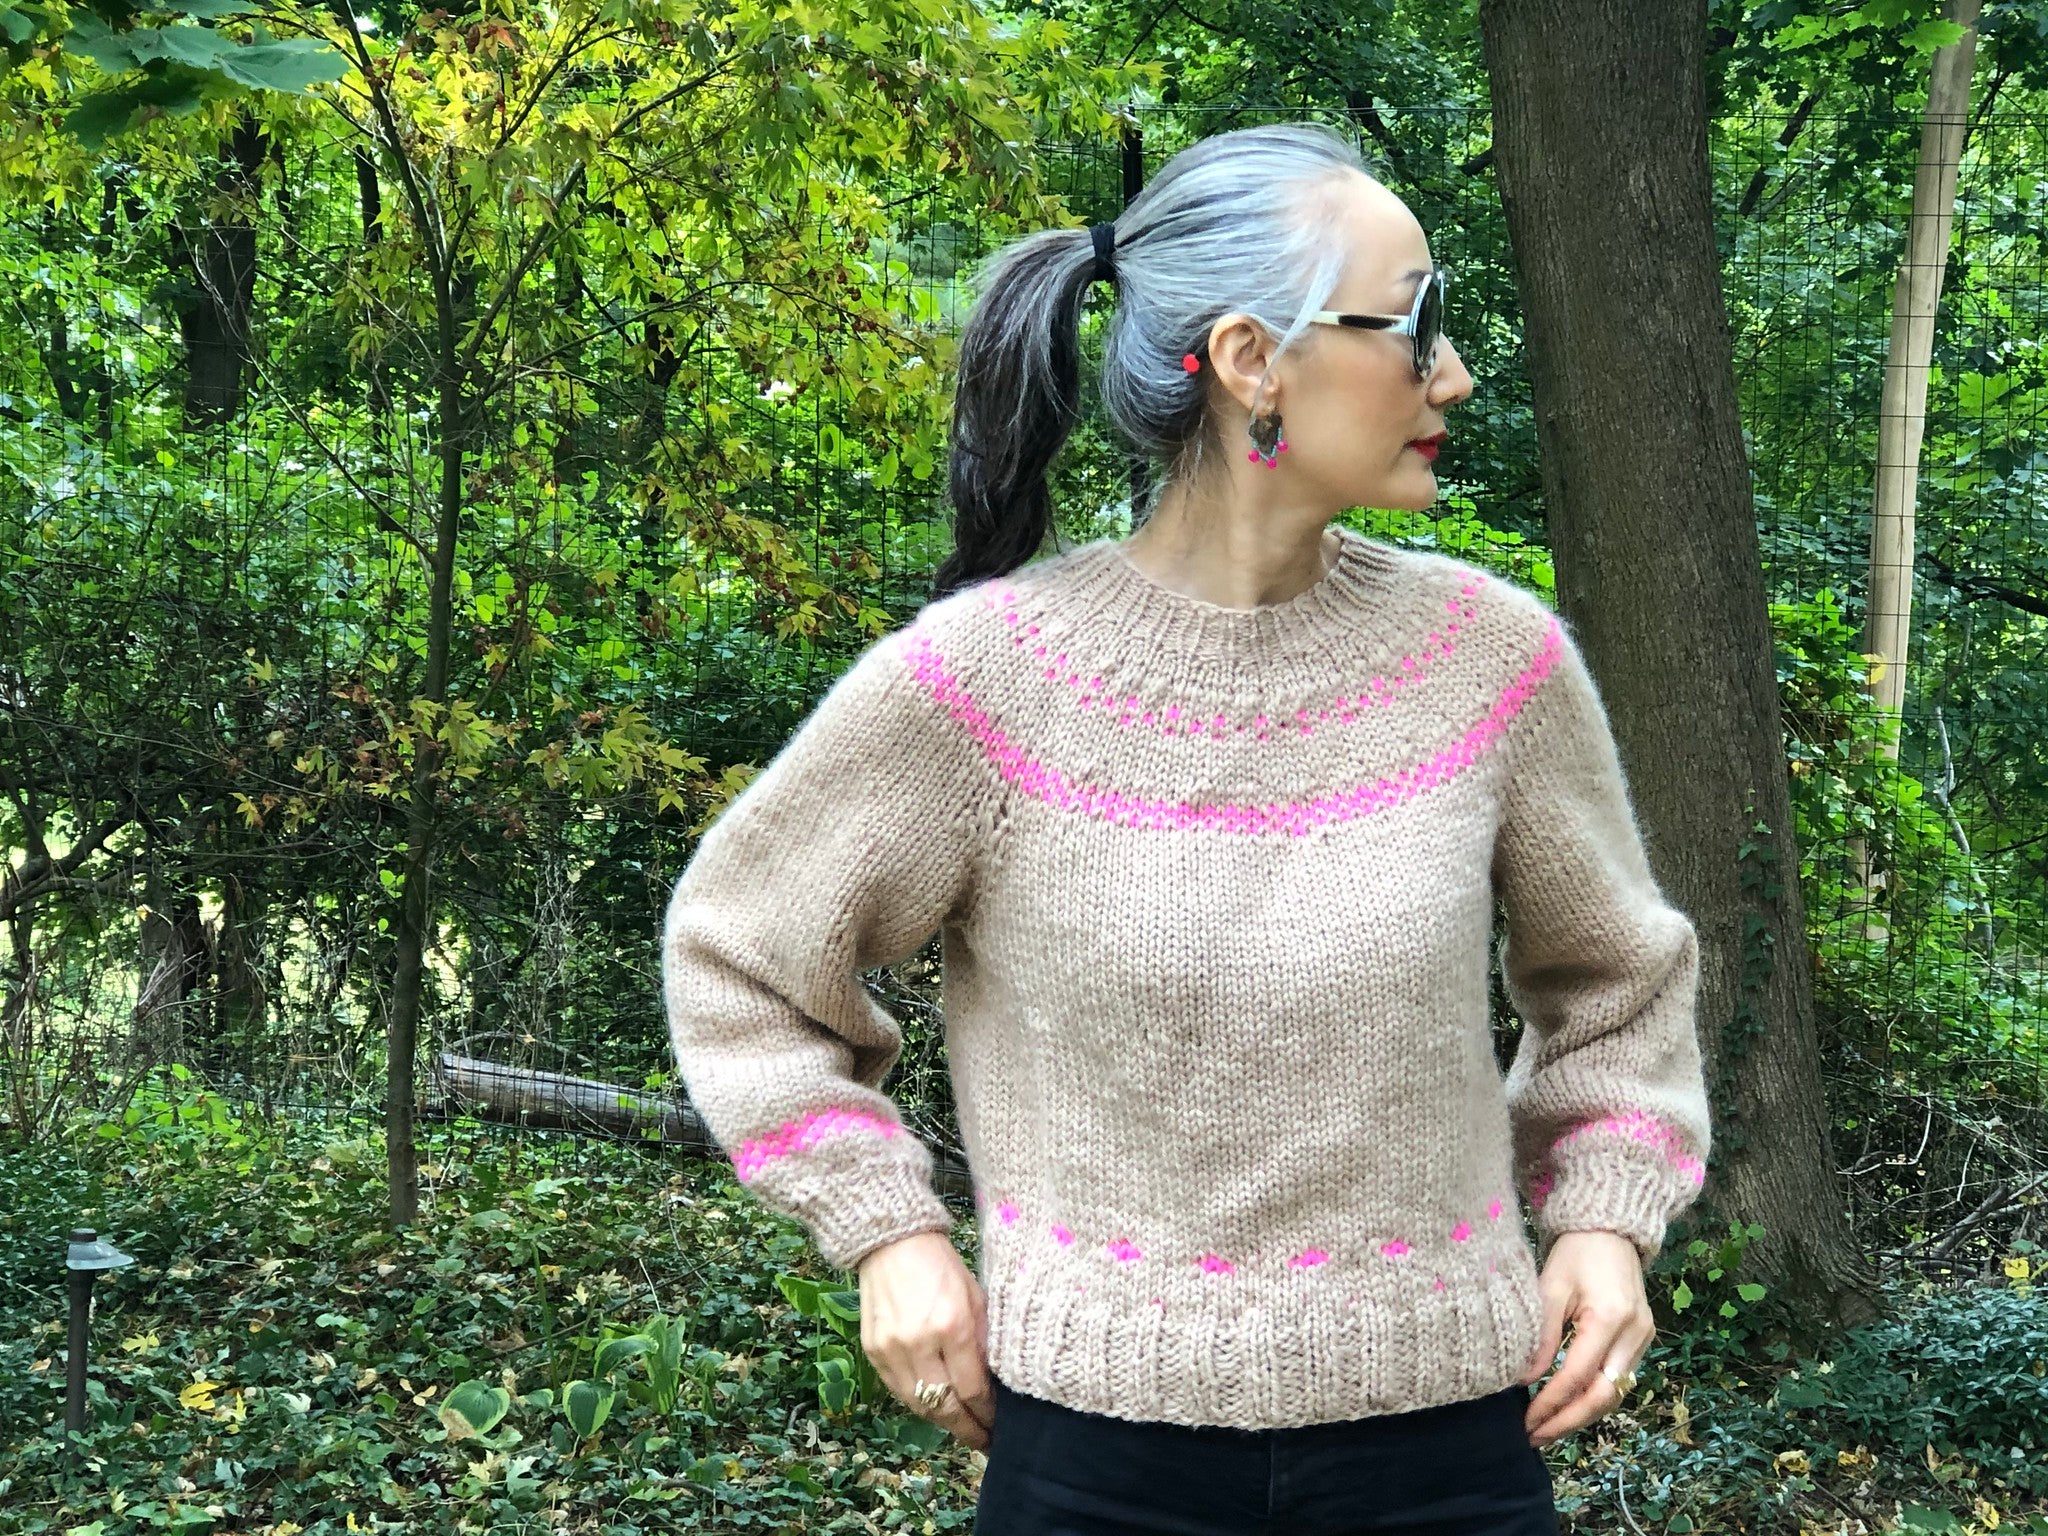 DIY Kit - Scandinavian Sweater - Dream (Merino Worsted)